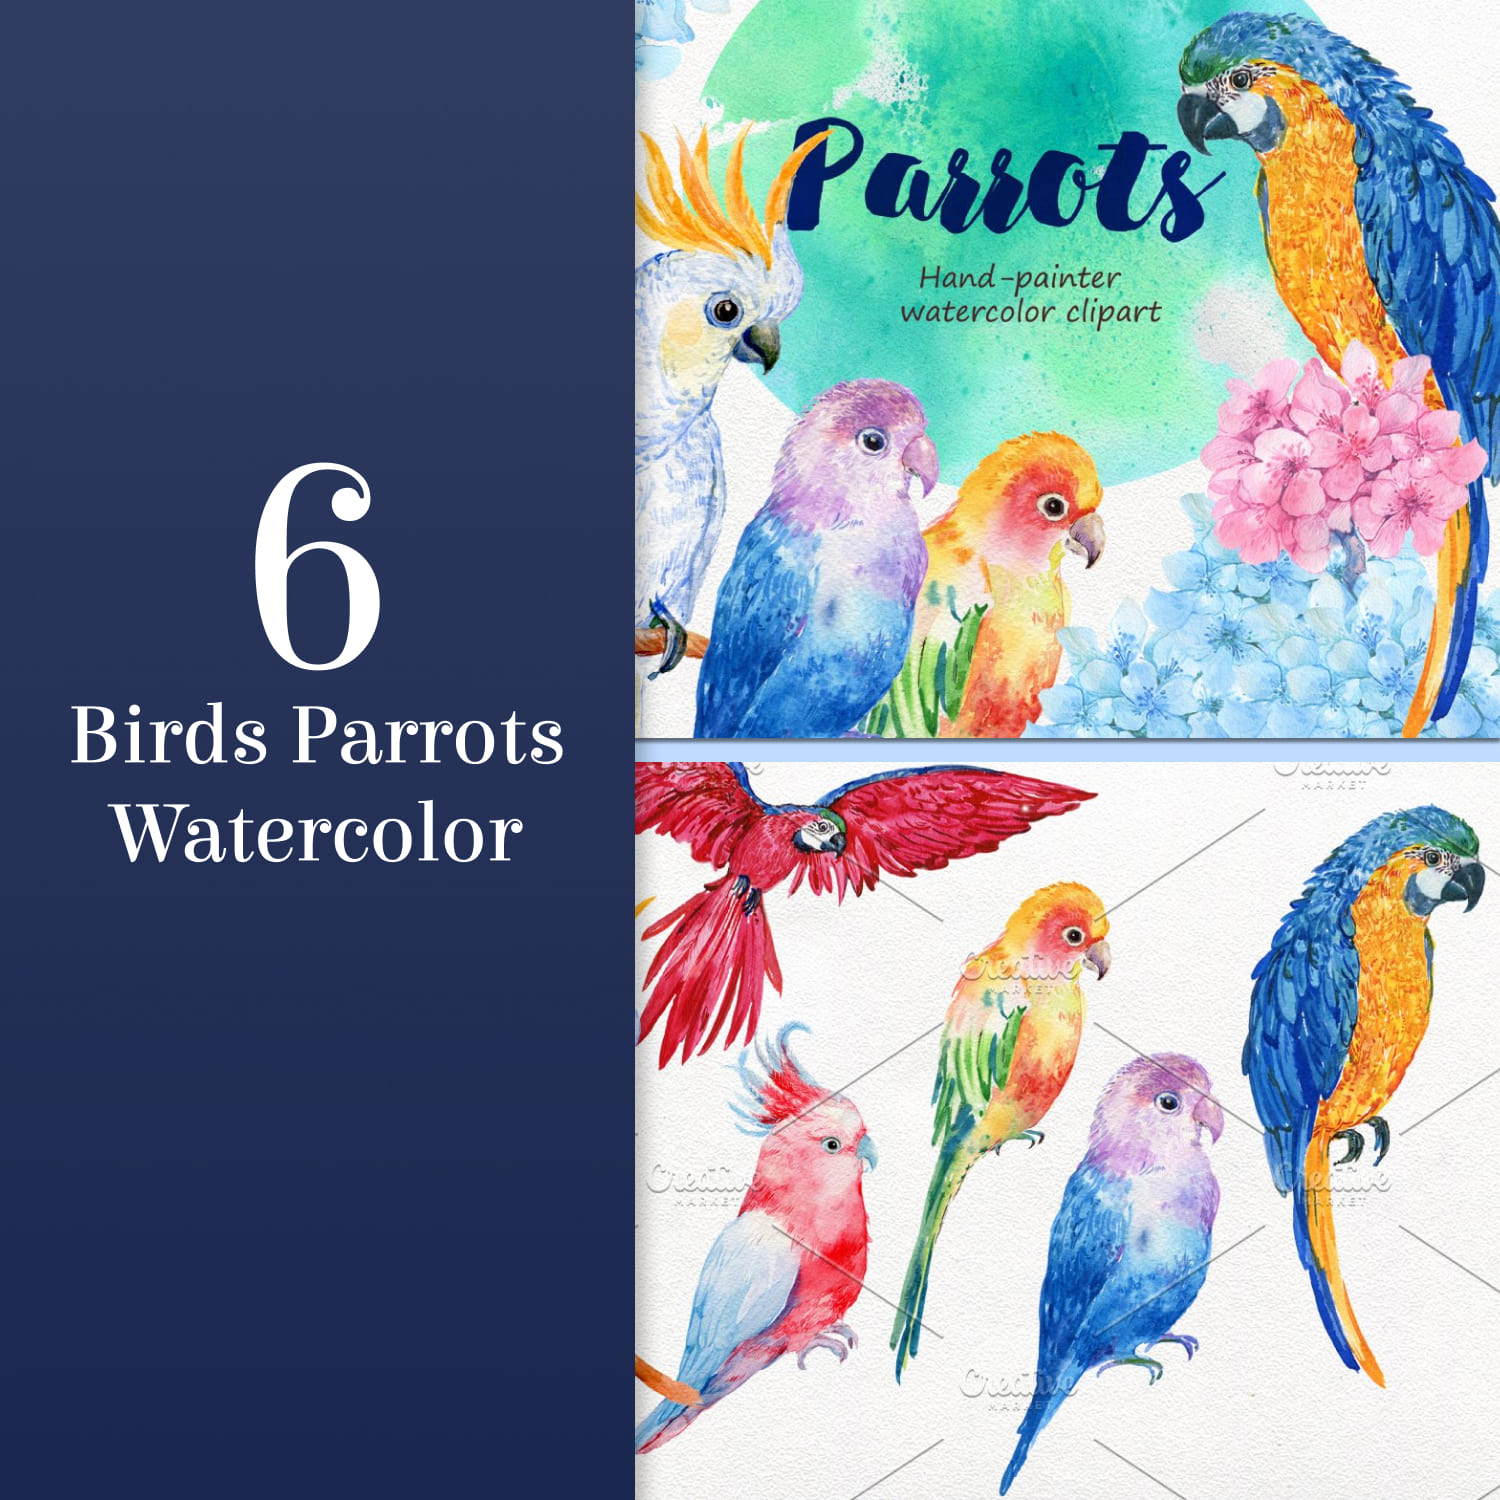 6 birds parrots watercolor - main image preview.